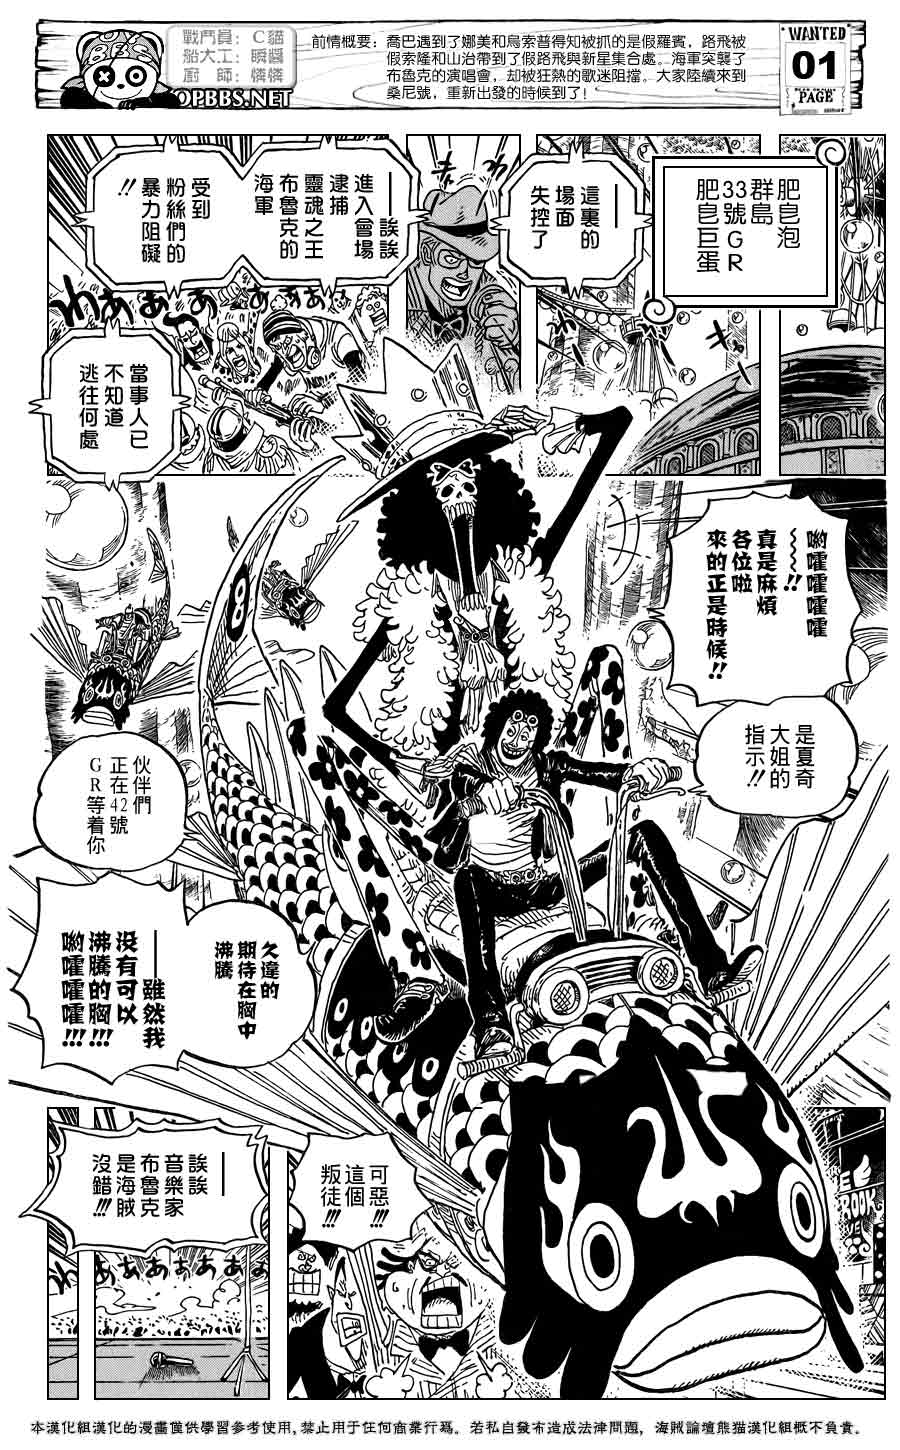 漫画更新 海贼王one Piece 第601话通向新世界的冒险黎明 海贼王 草帽海贼团 飞赞